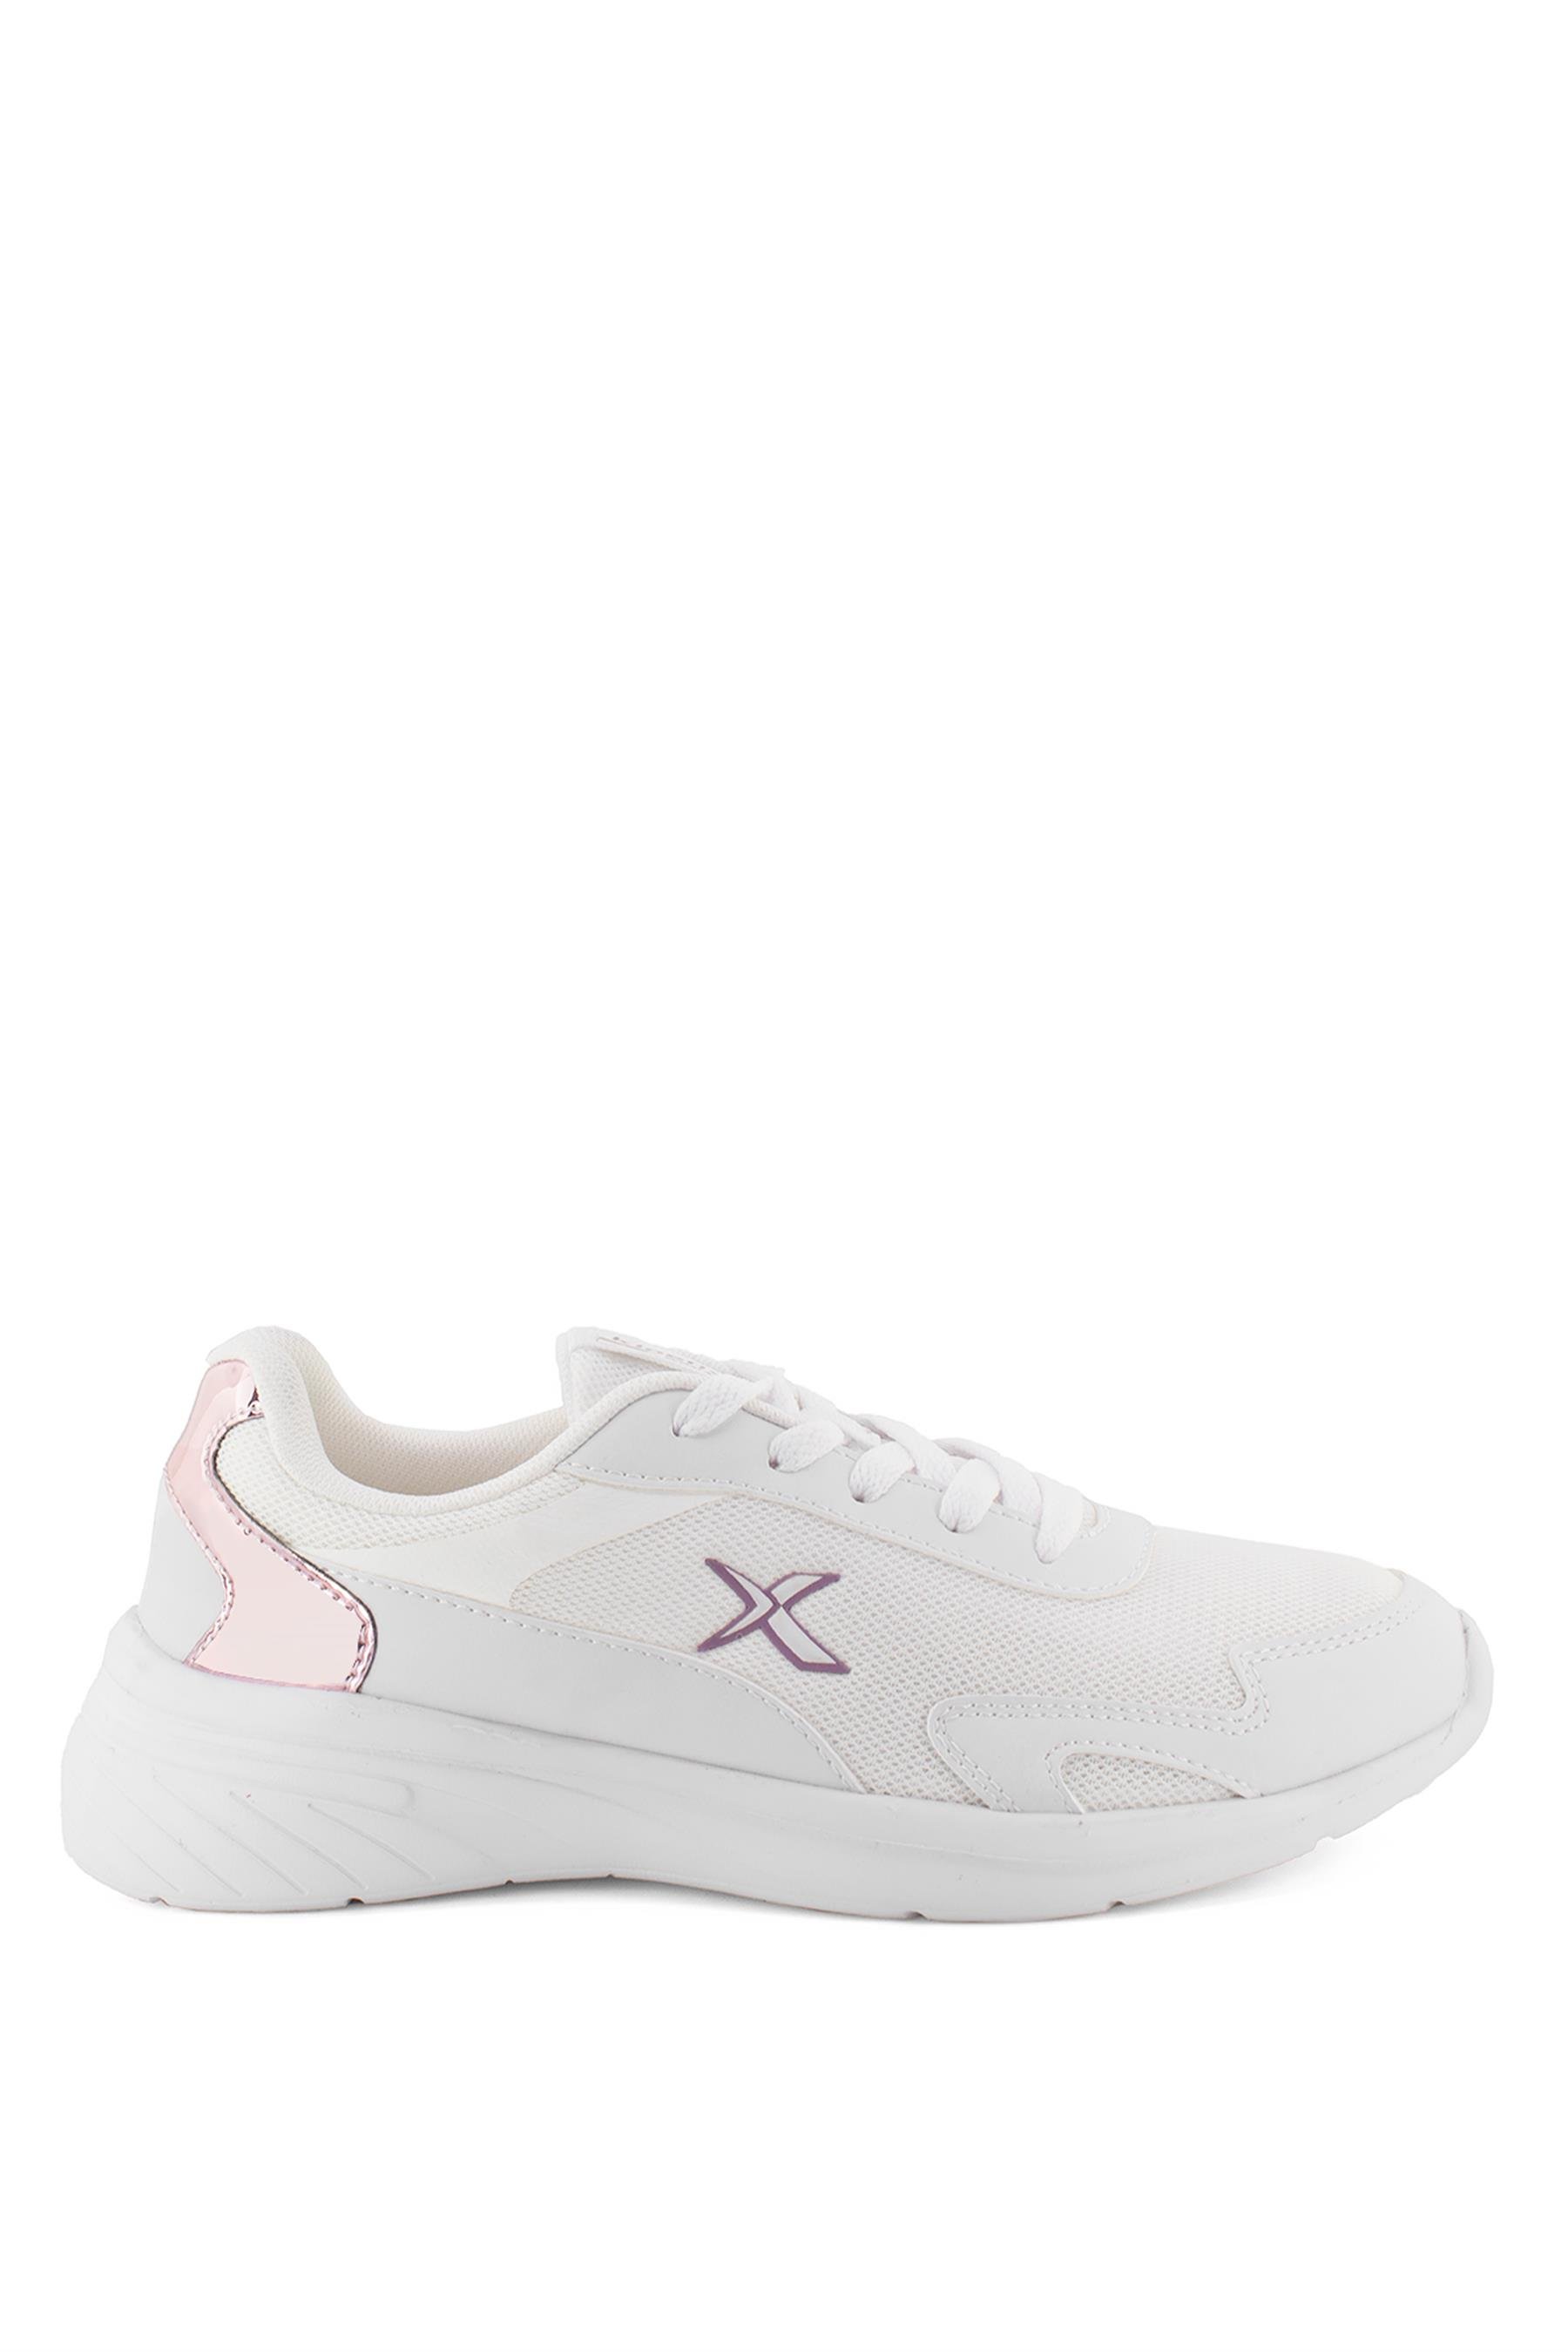 Kinetix 101331765 Grace 3FX Kadın Spor Ayakkabı Beyaz - Ayakkabı Fuarı Elit